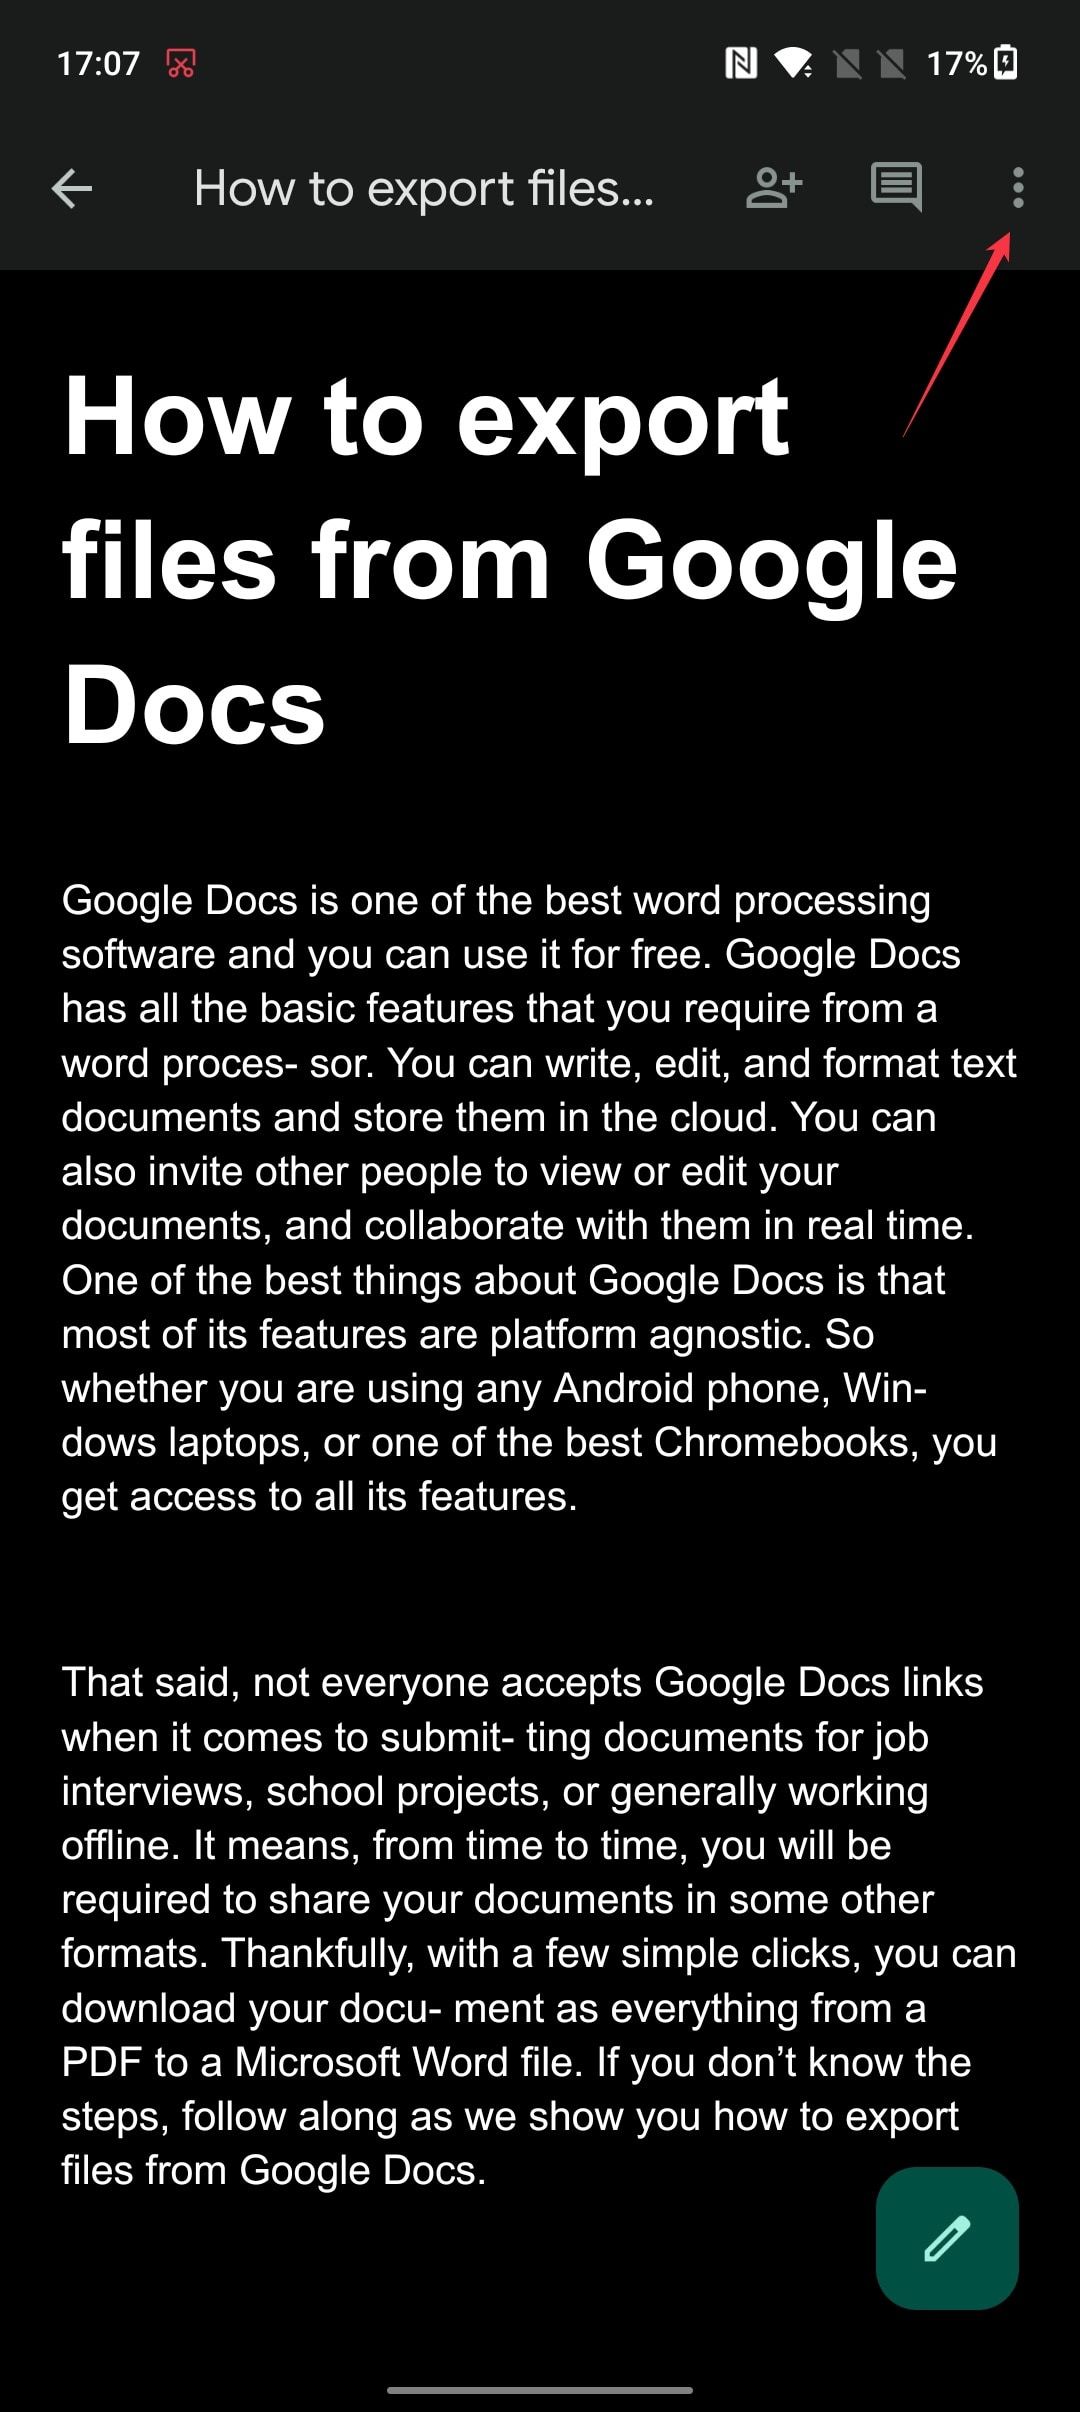 Toque no ícone de três pontos para configurar um documento para uso off-line no Google Docs